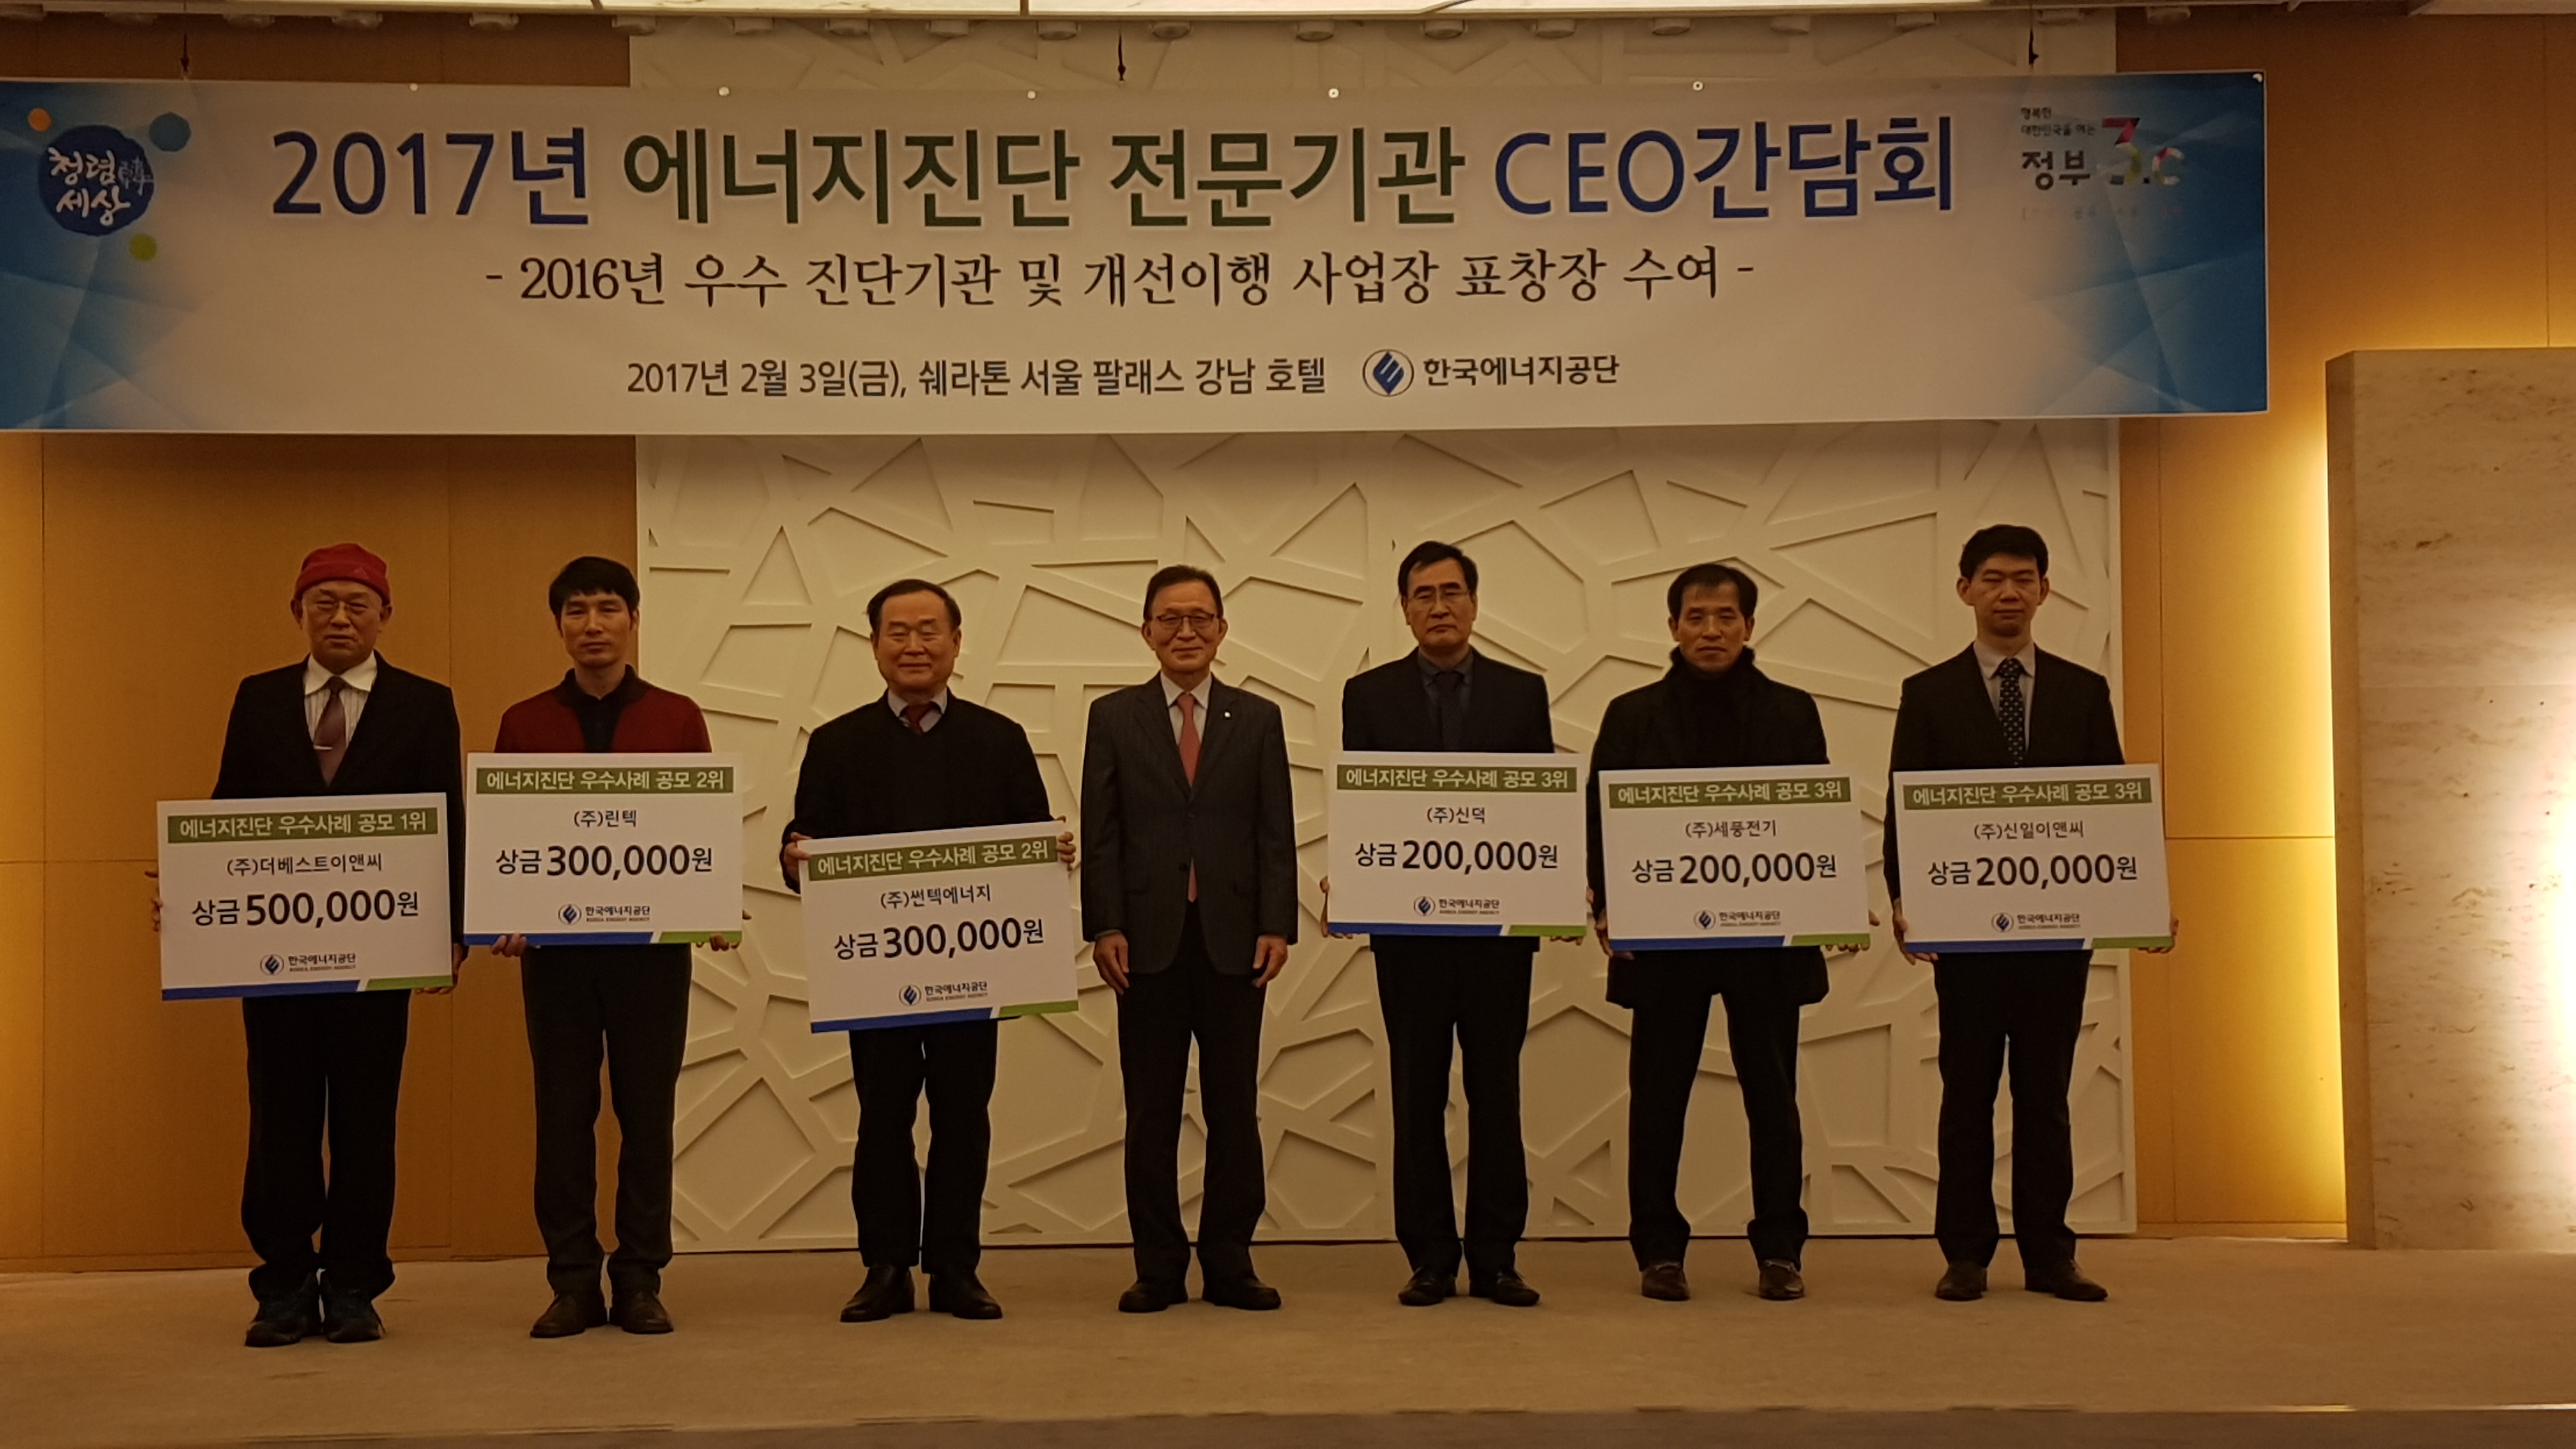 2017년 에너지진단 전문기관 CEO간담회-2017.02.03.jpg